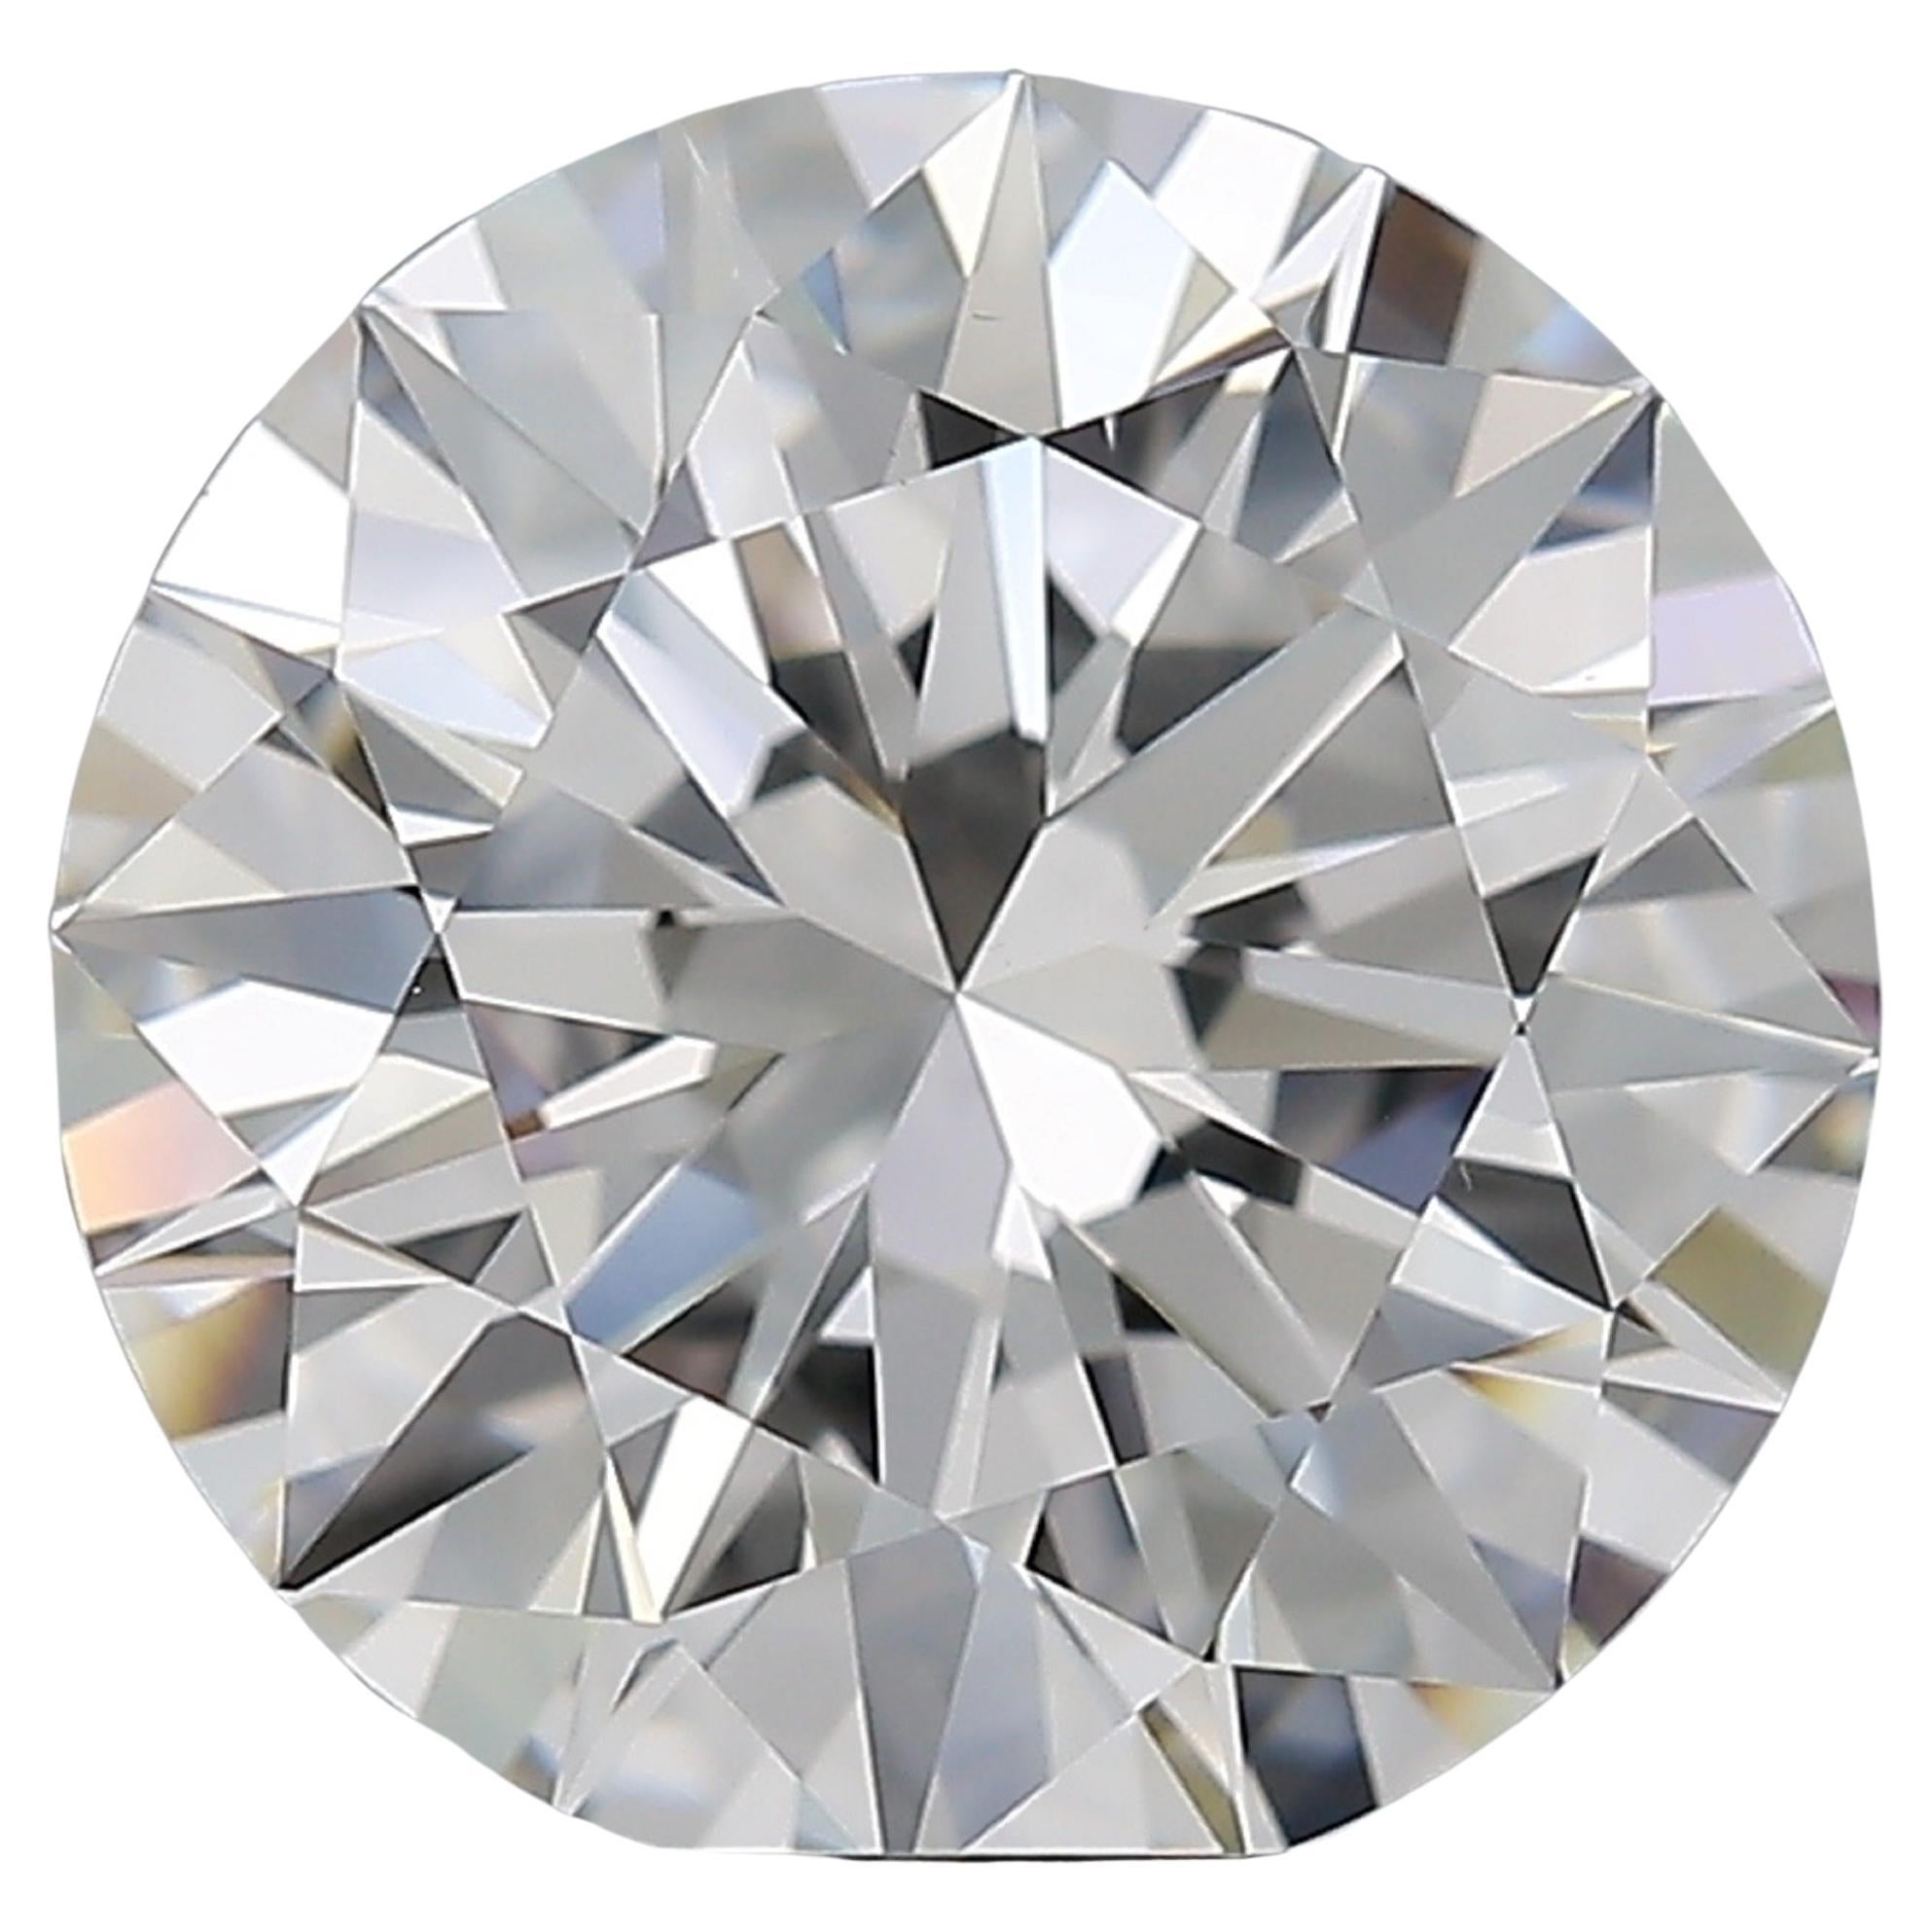 Une bague de fiançailles ou solitaire étonnante la pierre principale pèse  Le diamant rond de 10 carats certifié par la GIA est d'une pureté parfaite, d'une blancheur éclatante et d'une brillance éblouissante ! Ce diamant ovale sophistiqué offre un